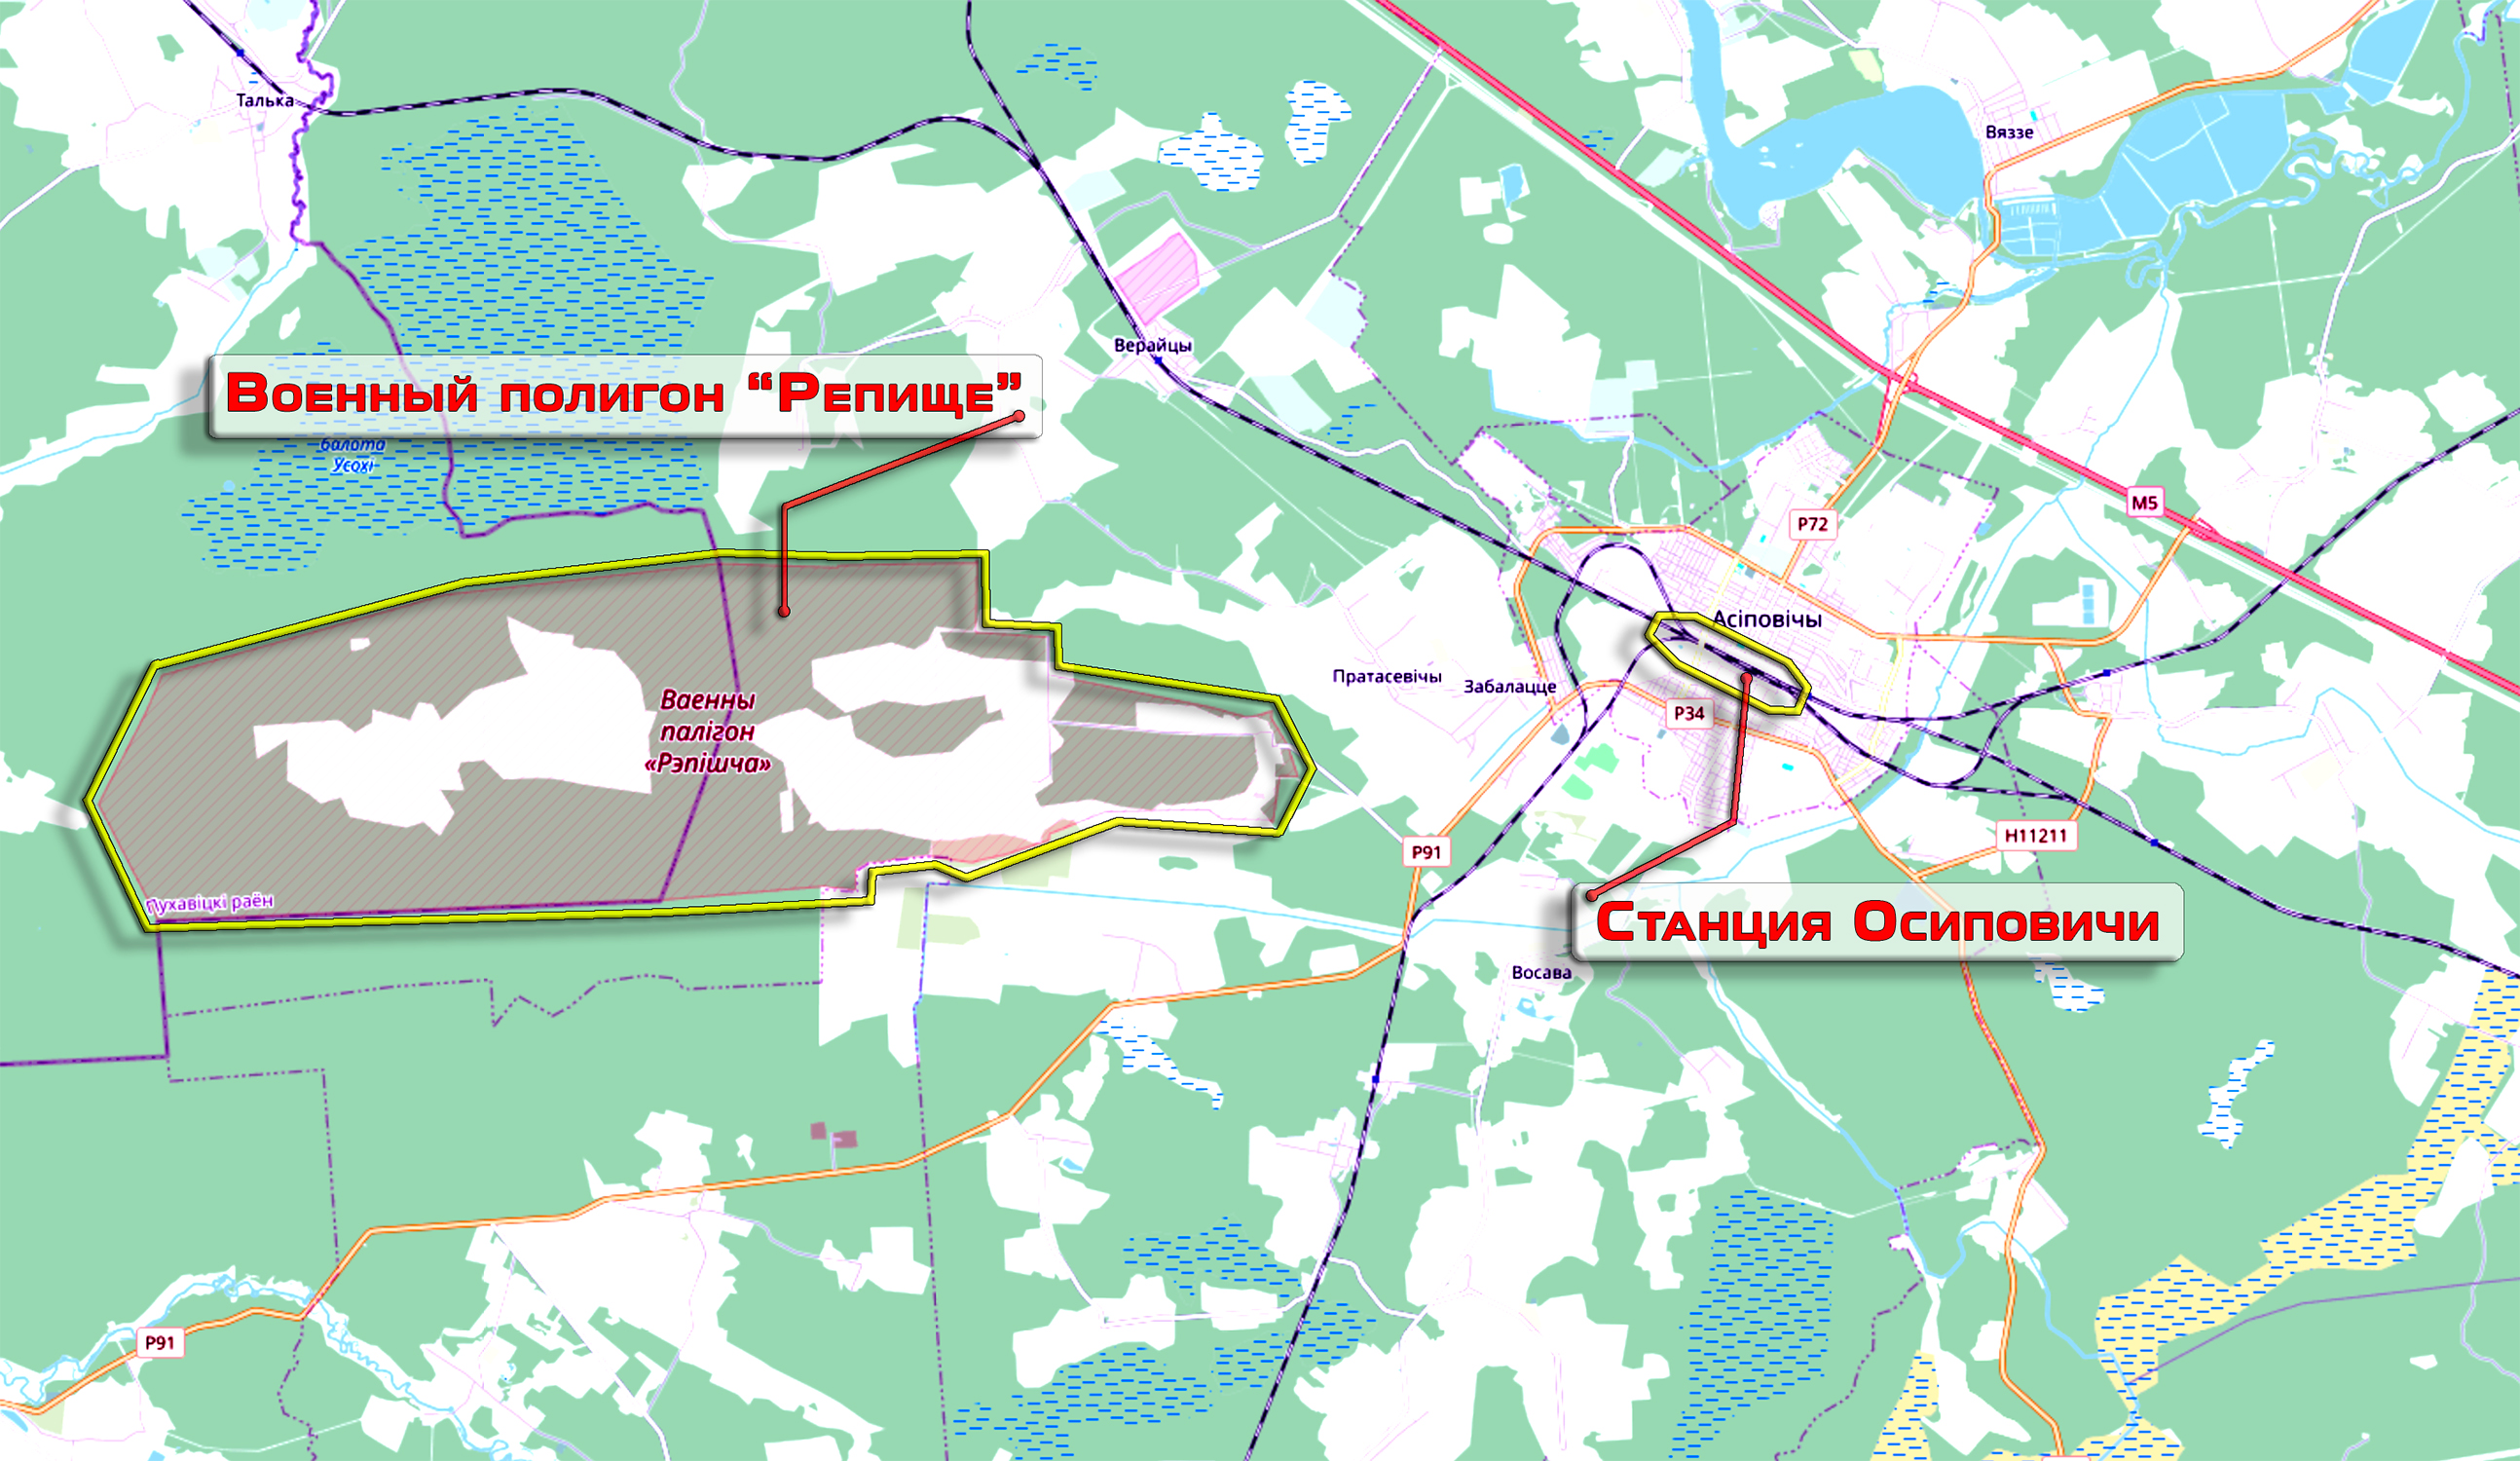 Расположение военного полигона "Репище" вблизи города Осиповичи